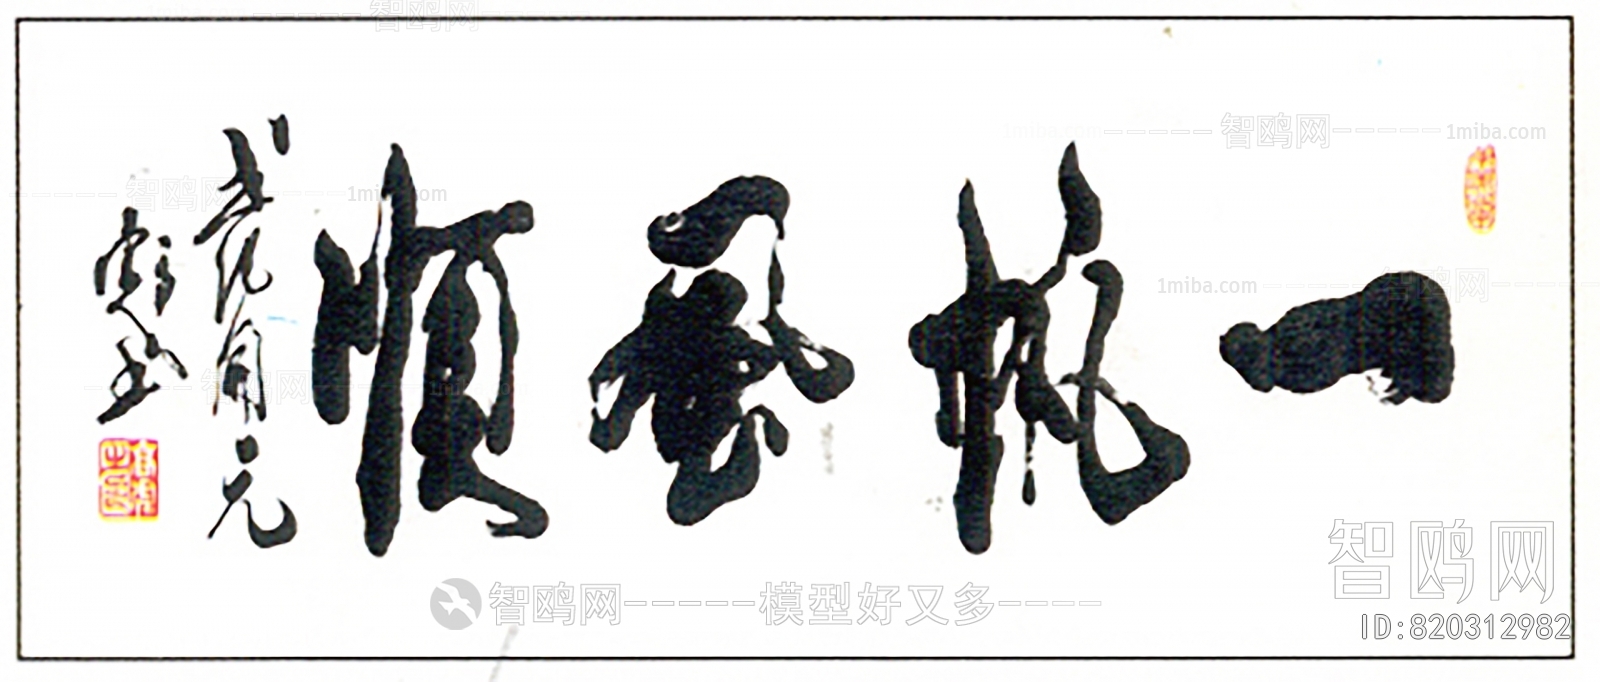 新中式书法字画